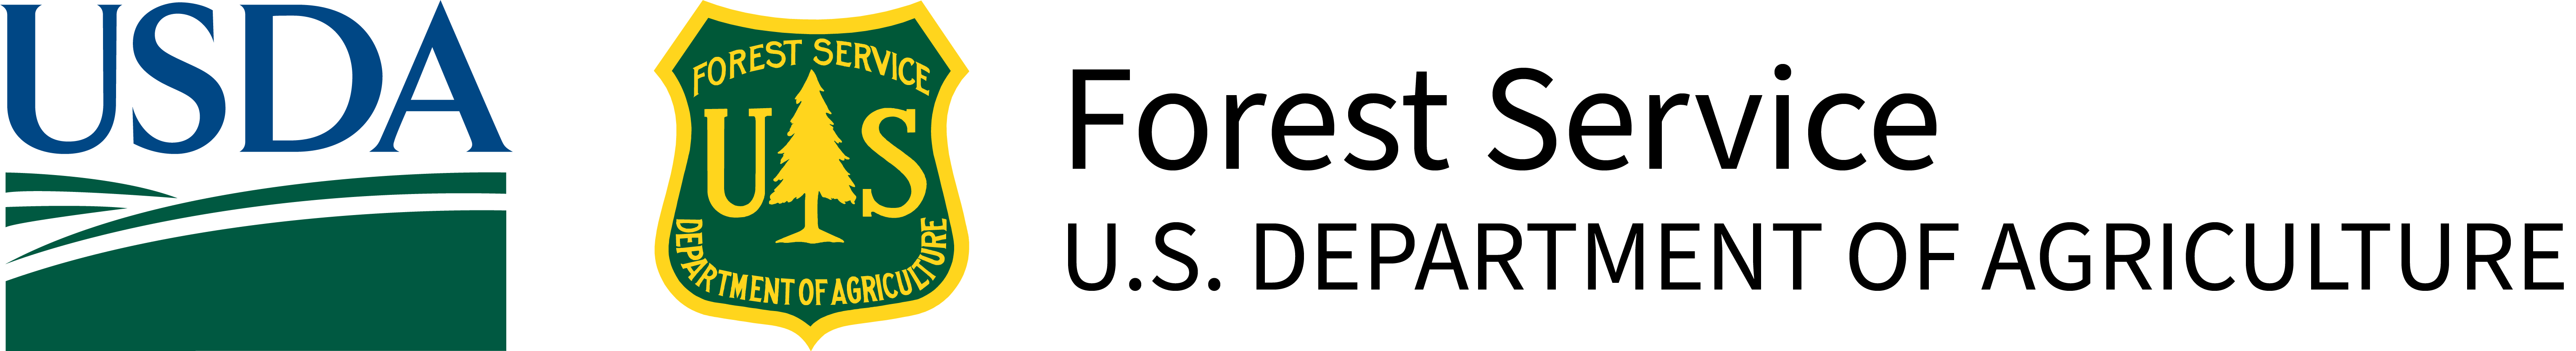 USDA - FS logo